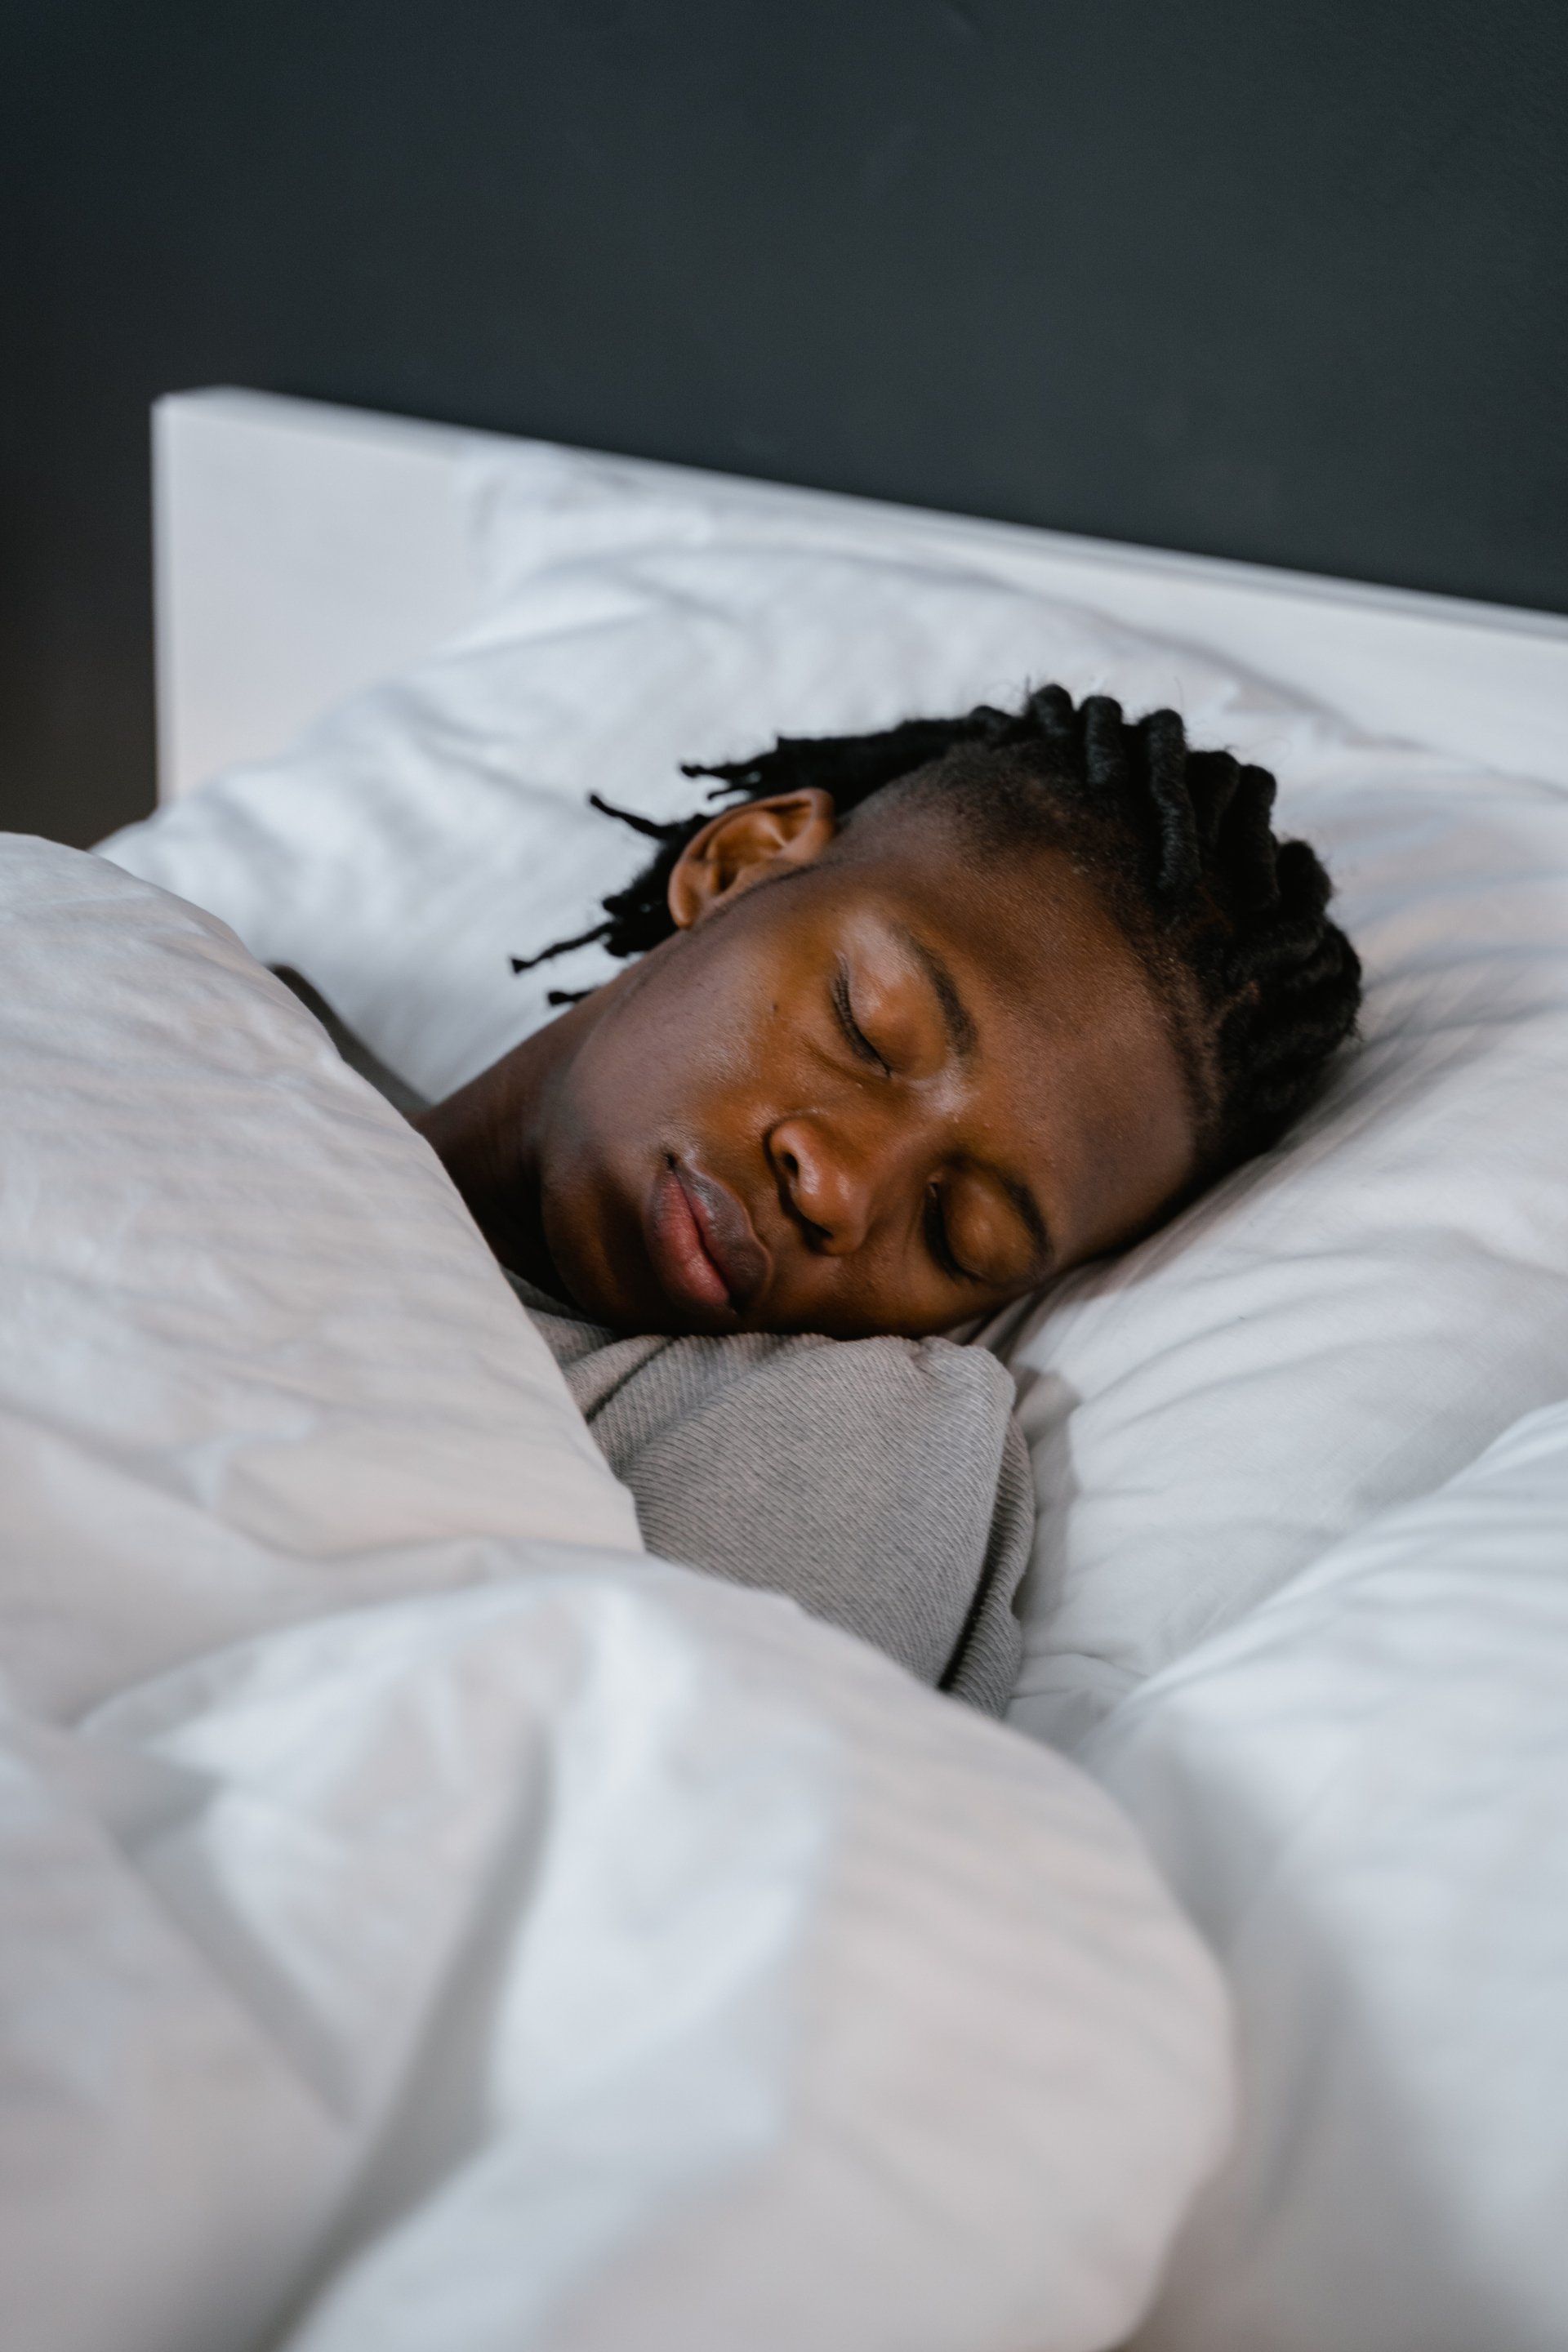 Forming good sleep habits